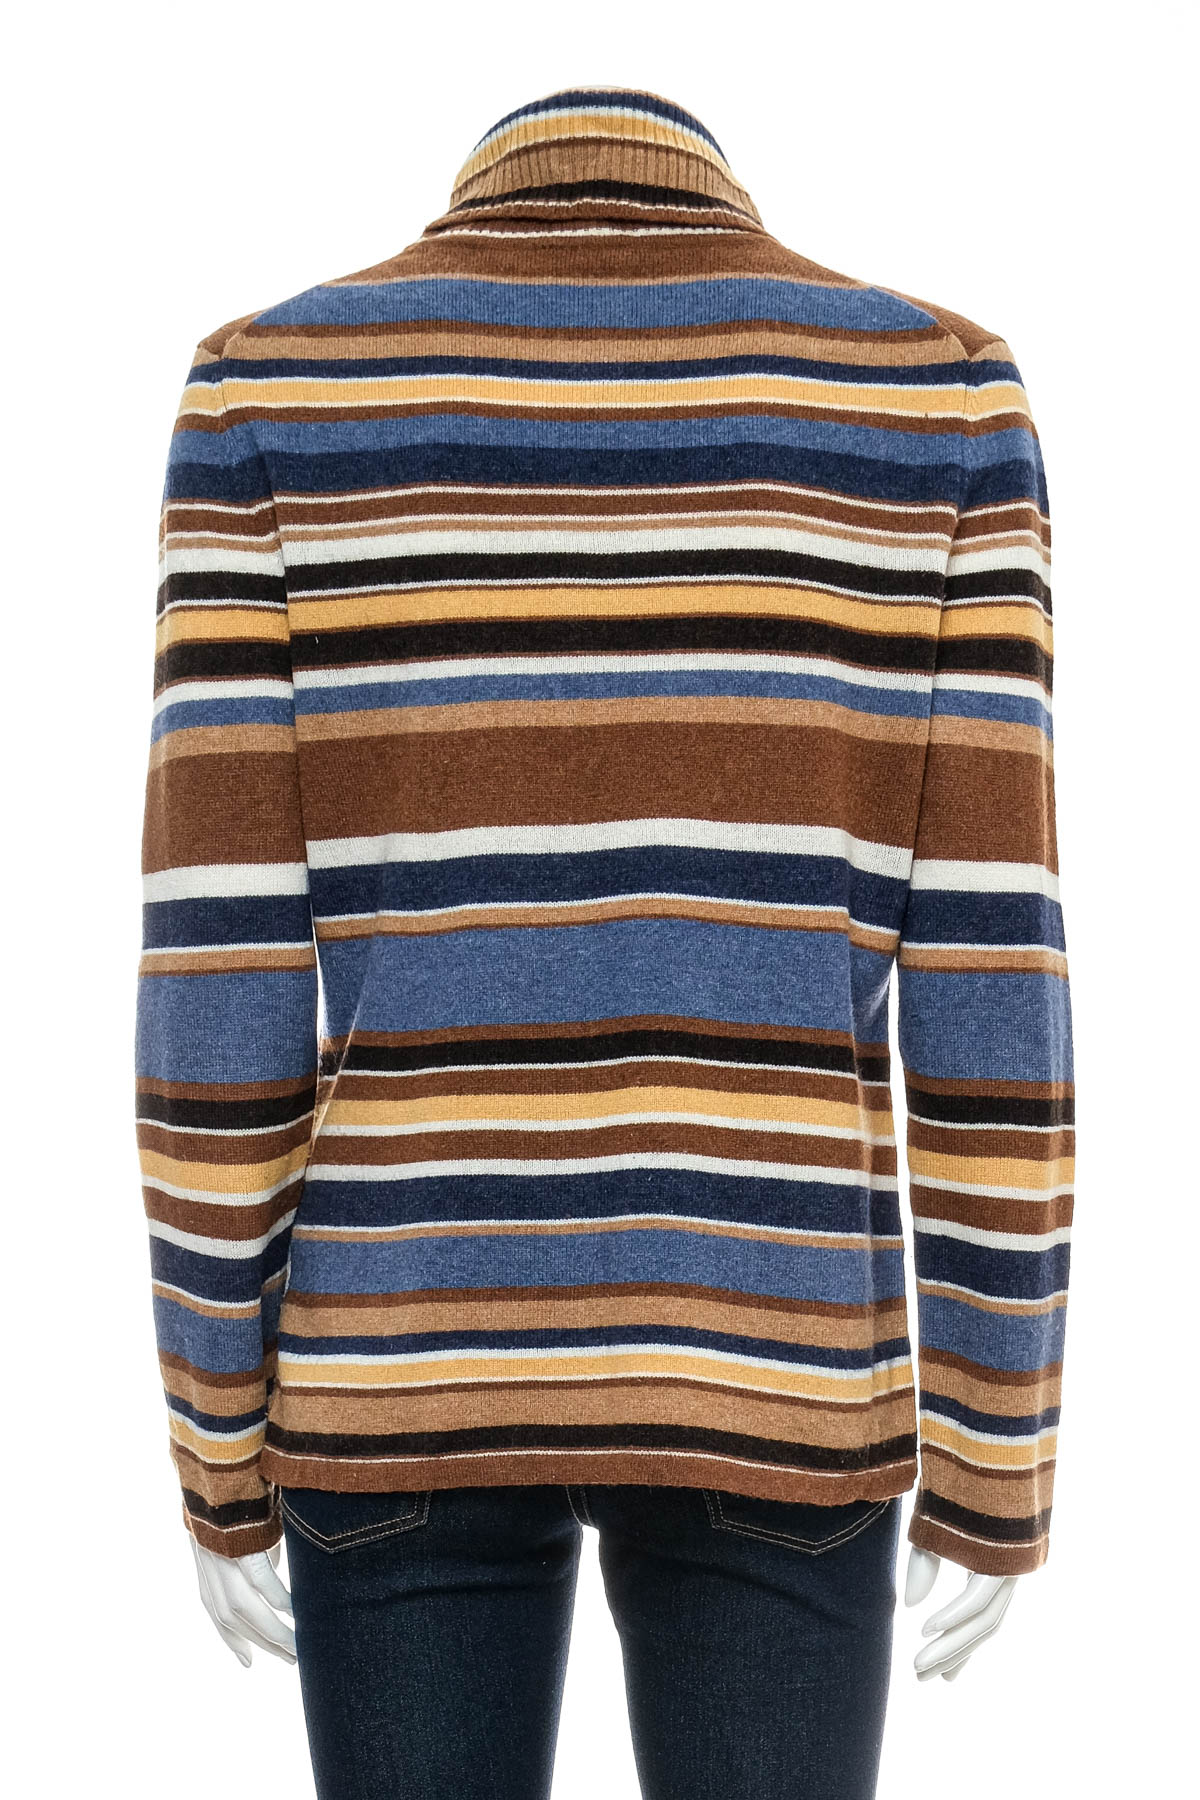 Women's sweater - GERRY WEBER - 1